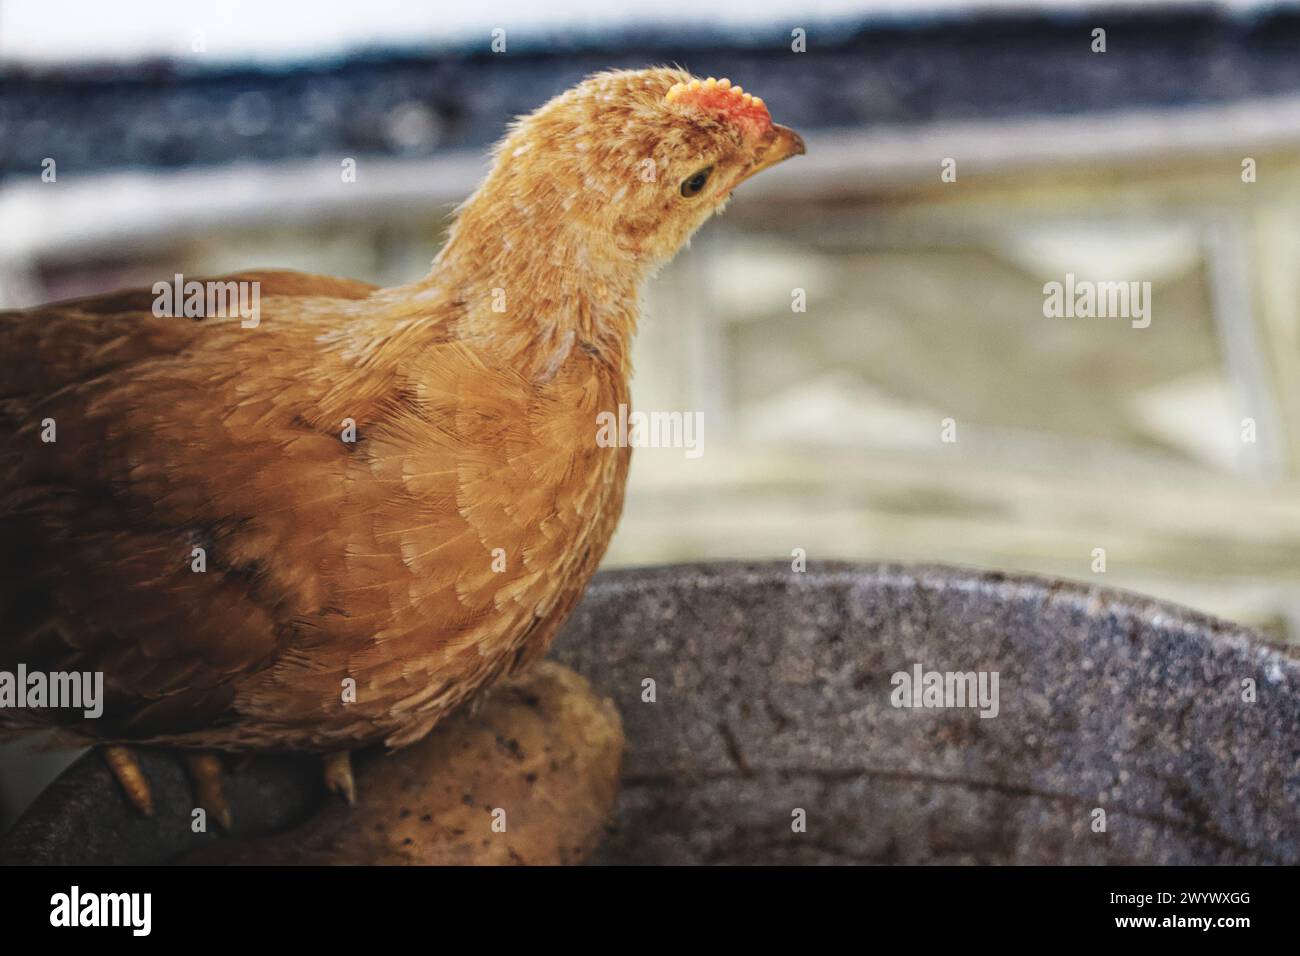 Un pollo giovane con piume d'arancia brillante e un pettine rosso distinto è appollaiato su una superficie grigia; lo sfondo è sfocato. Foto Stock